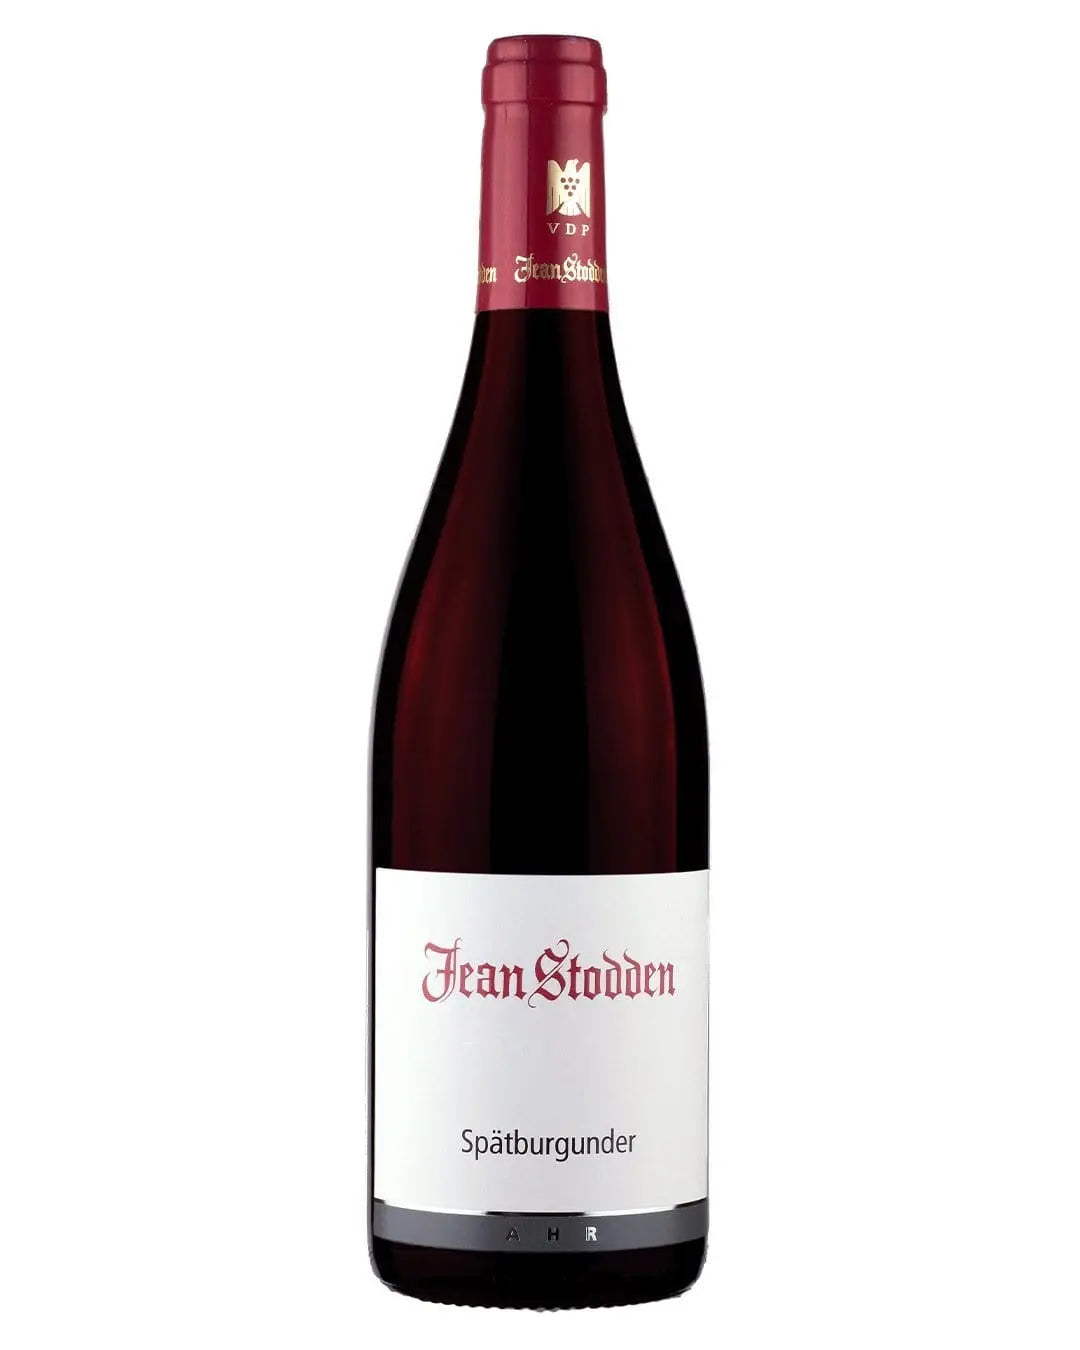 Jean Stodden Spatburgunder 2019, 75 cl Red Wine